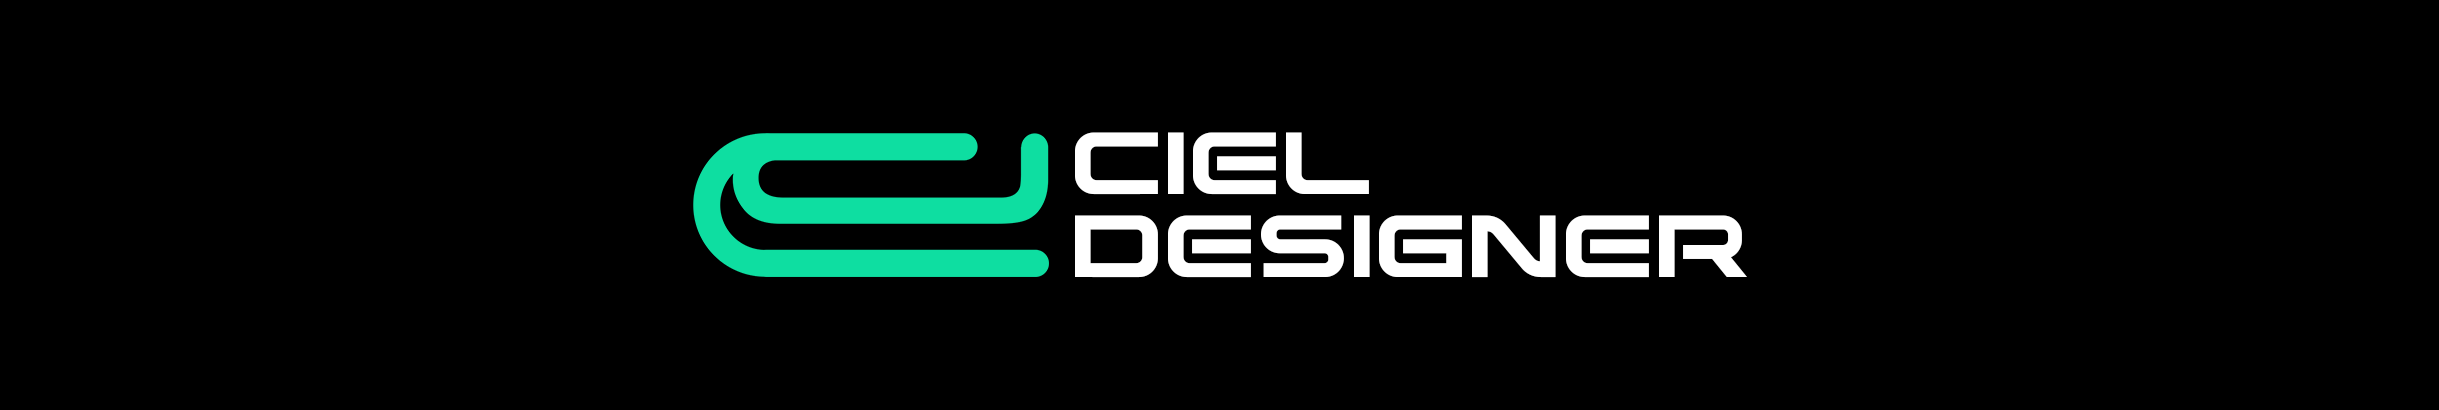 Ciel Designer のプロファイルバナー